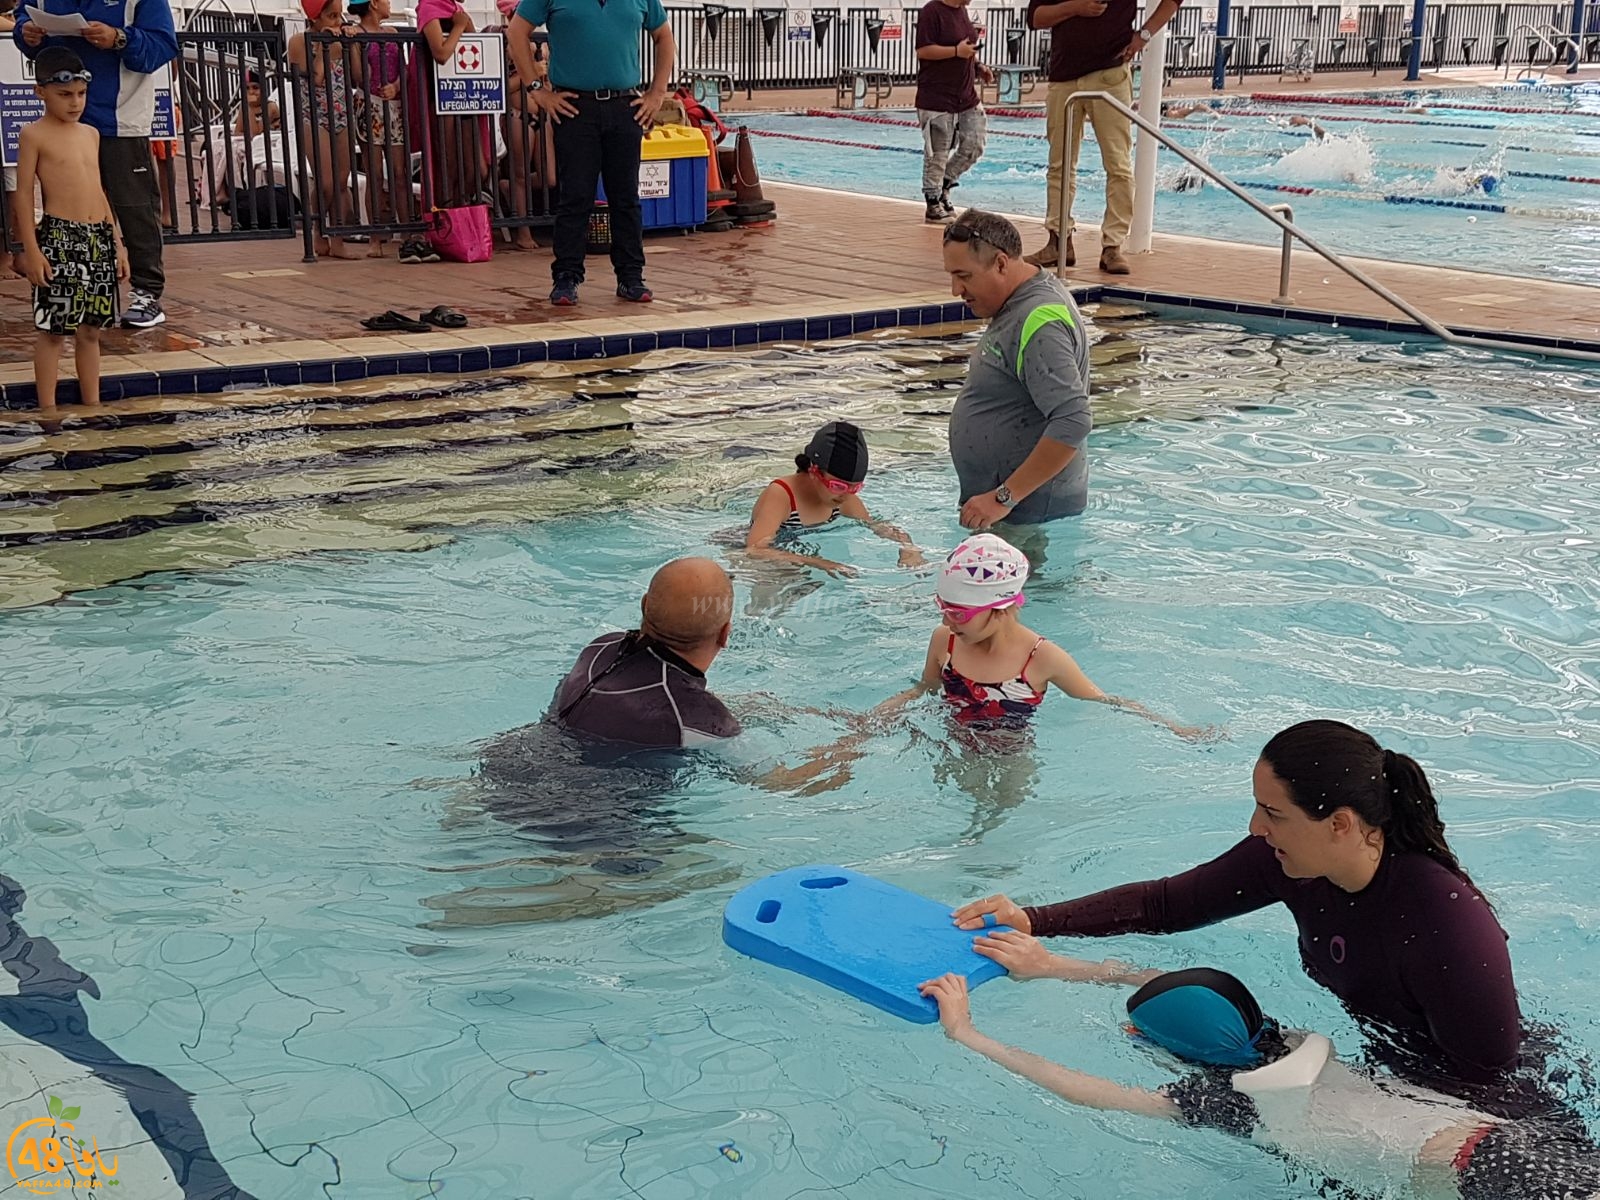 بالصور: المركز الجماهيري بيافا يفتتح دورة السباحة للاطفال وسط اقبال كبير 